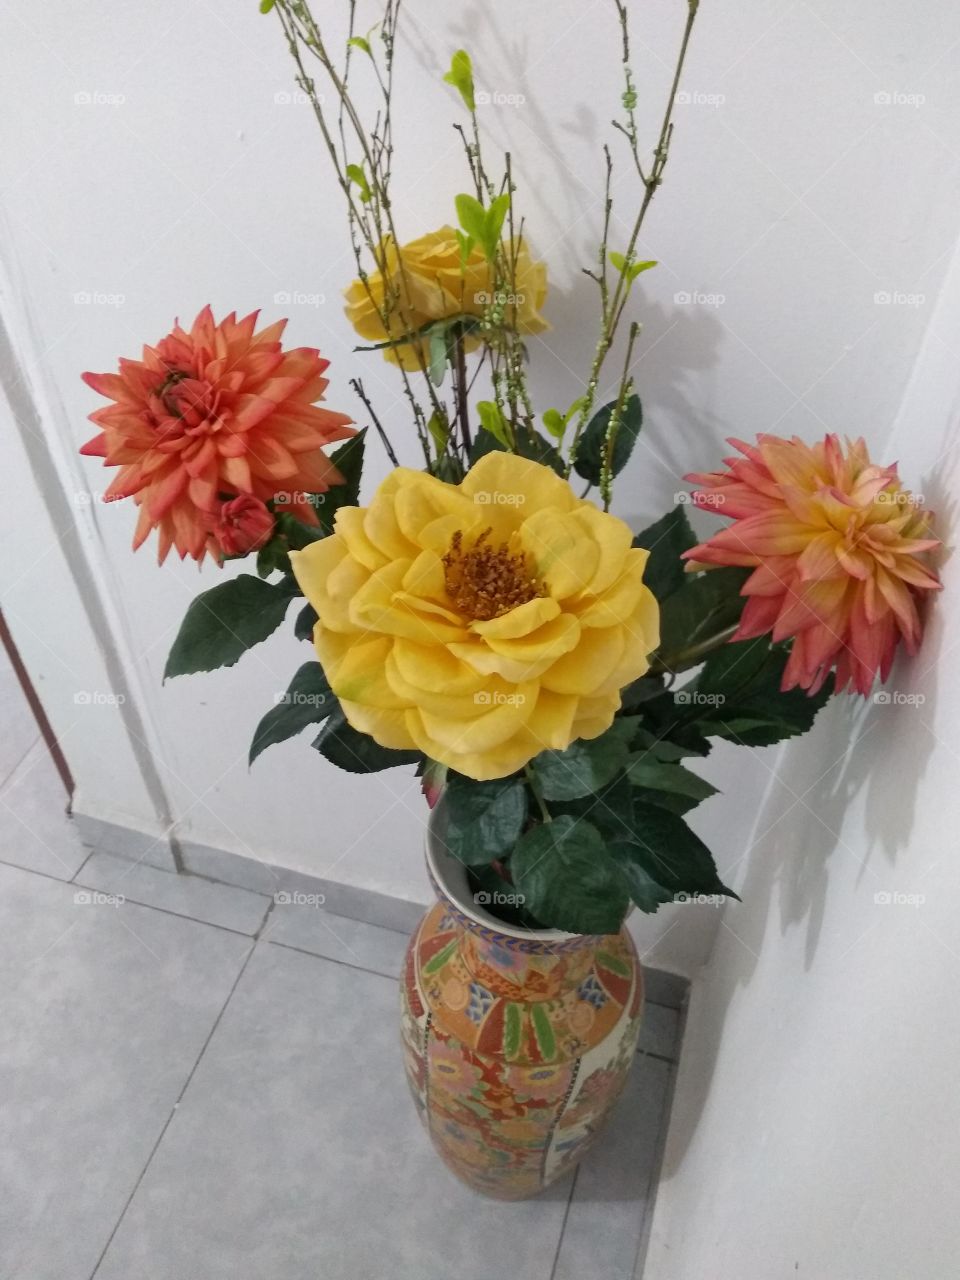 el jarrón y sus flores.